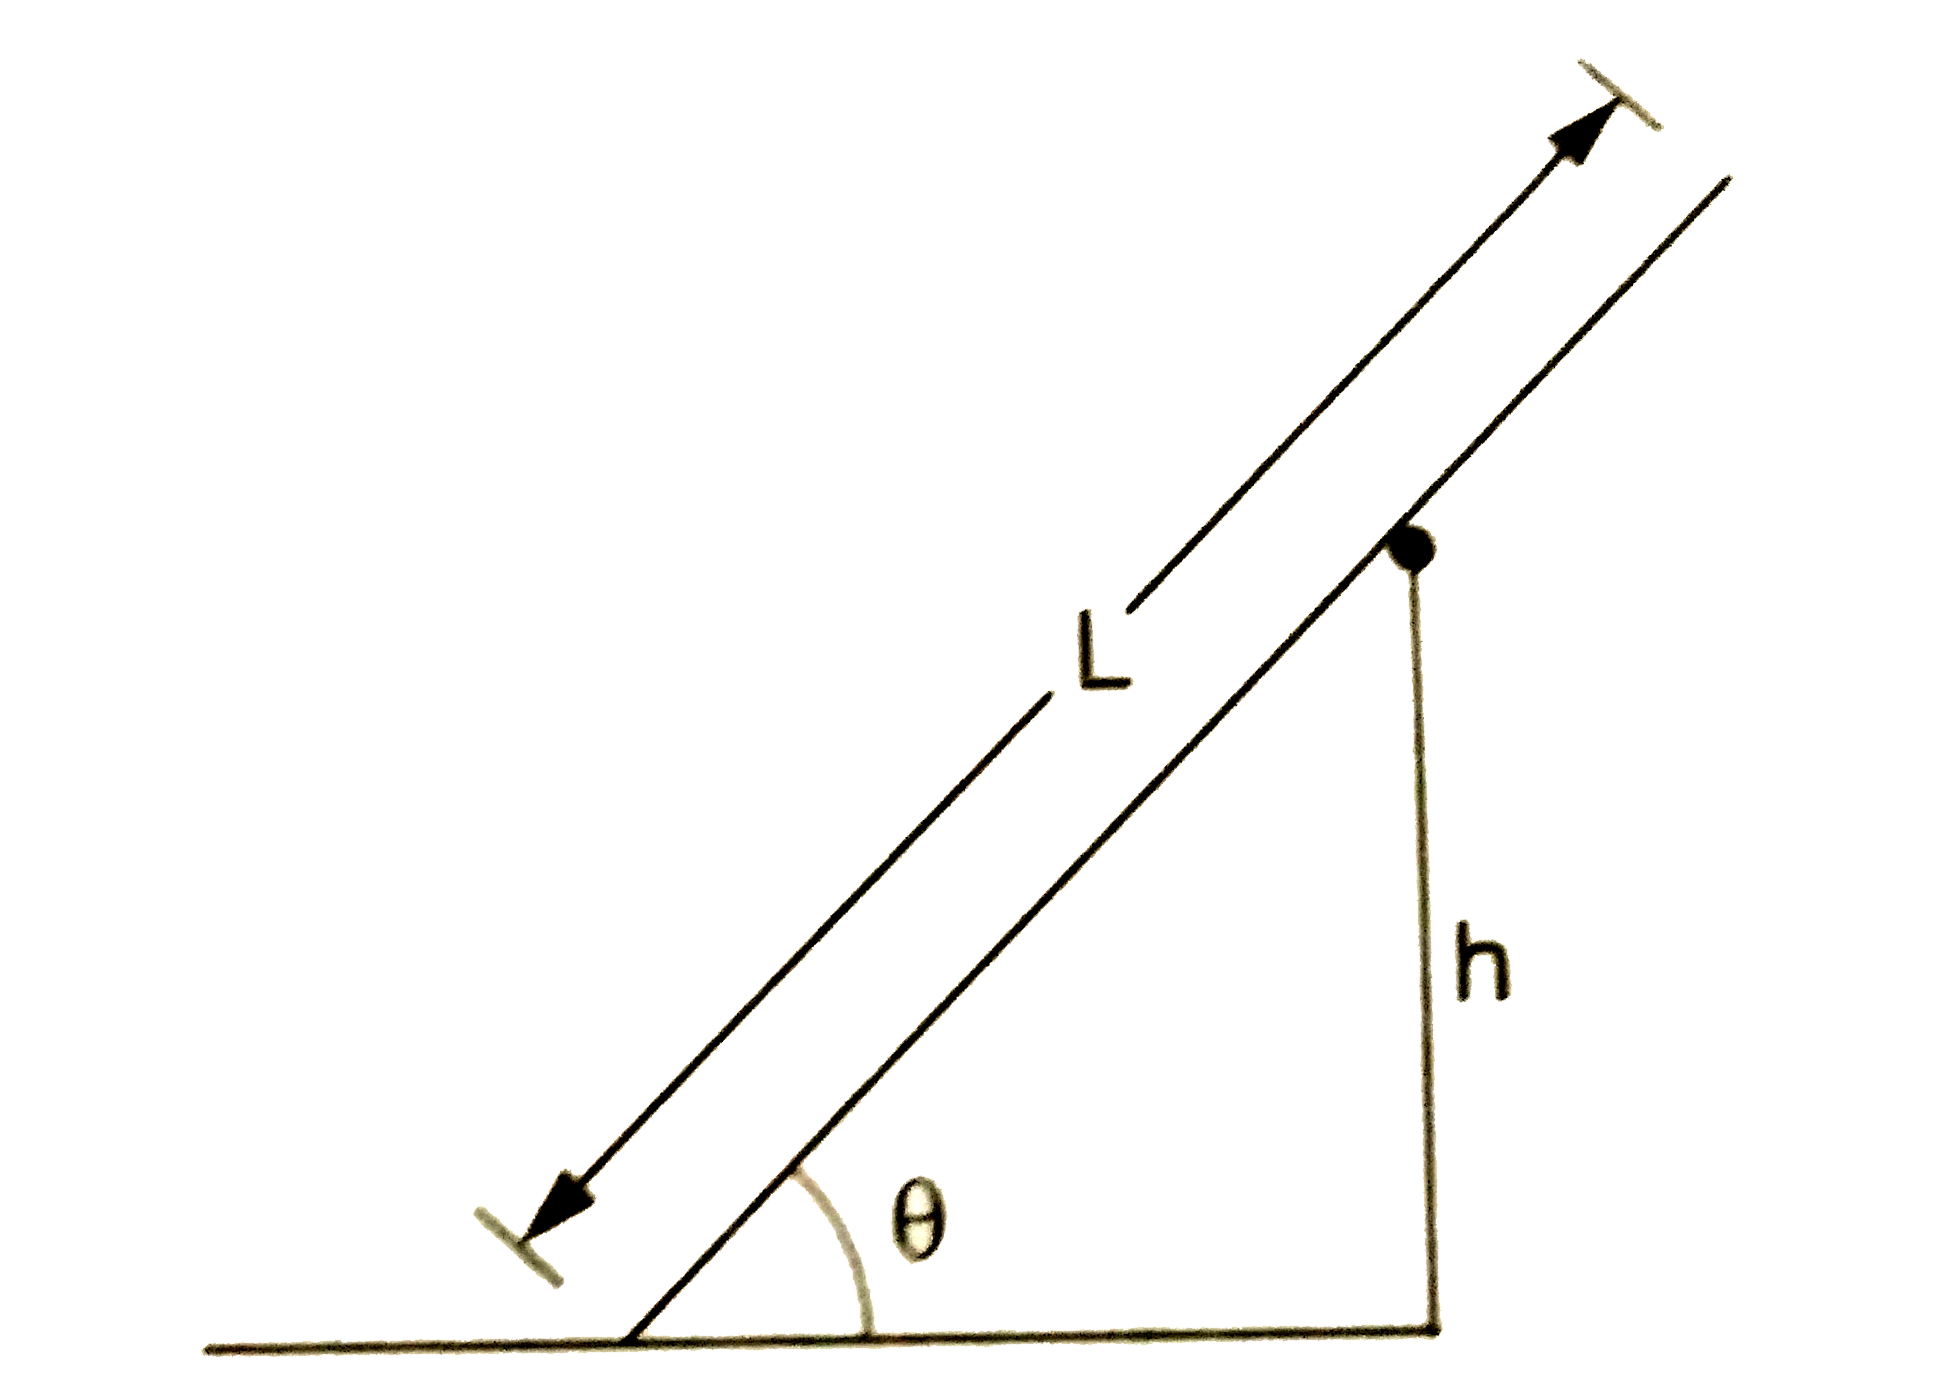 L लंबाई की एक समरूप छड़ एक चिकने रोलर पर चित्र 18.E8 में दिखाए अनुसार रखी हुई है। यदि संतुलन की स्थिति में रहने के लिए छड़ का क्षीतिज से न्यूनतम कोण theta  हो, तो छड़ के निचले सिरे तथा जमीन के बीच घर्षण गुणांक ज्ञात कीजिये